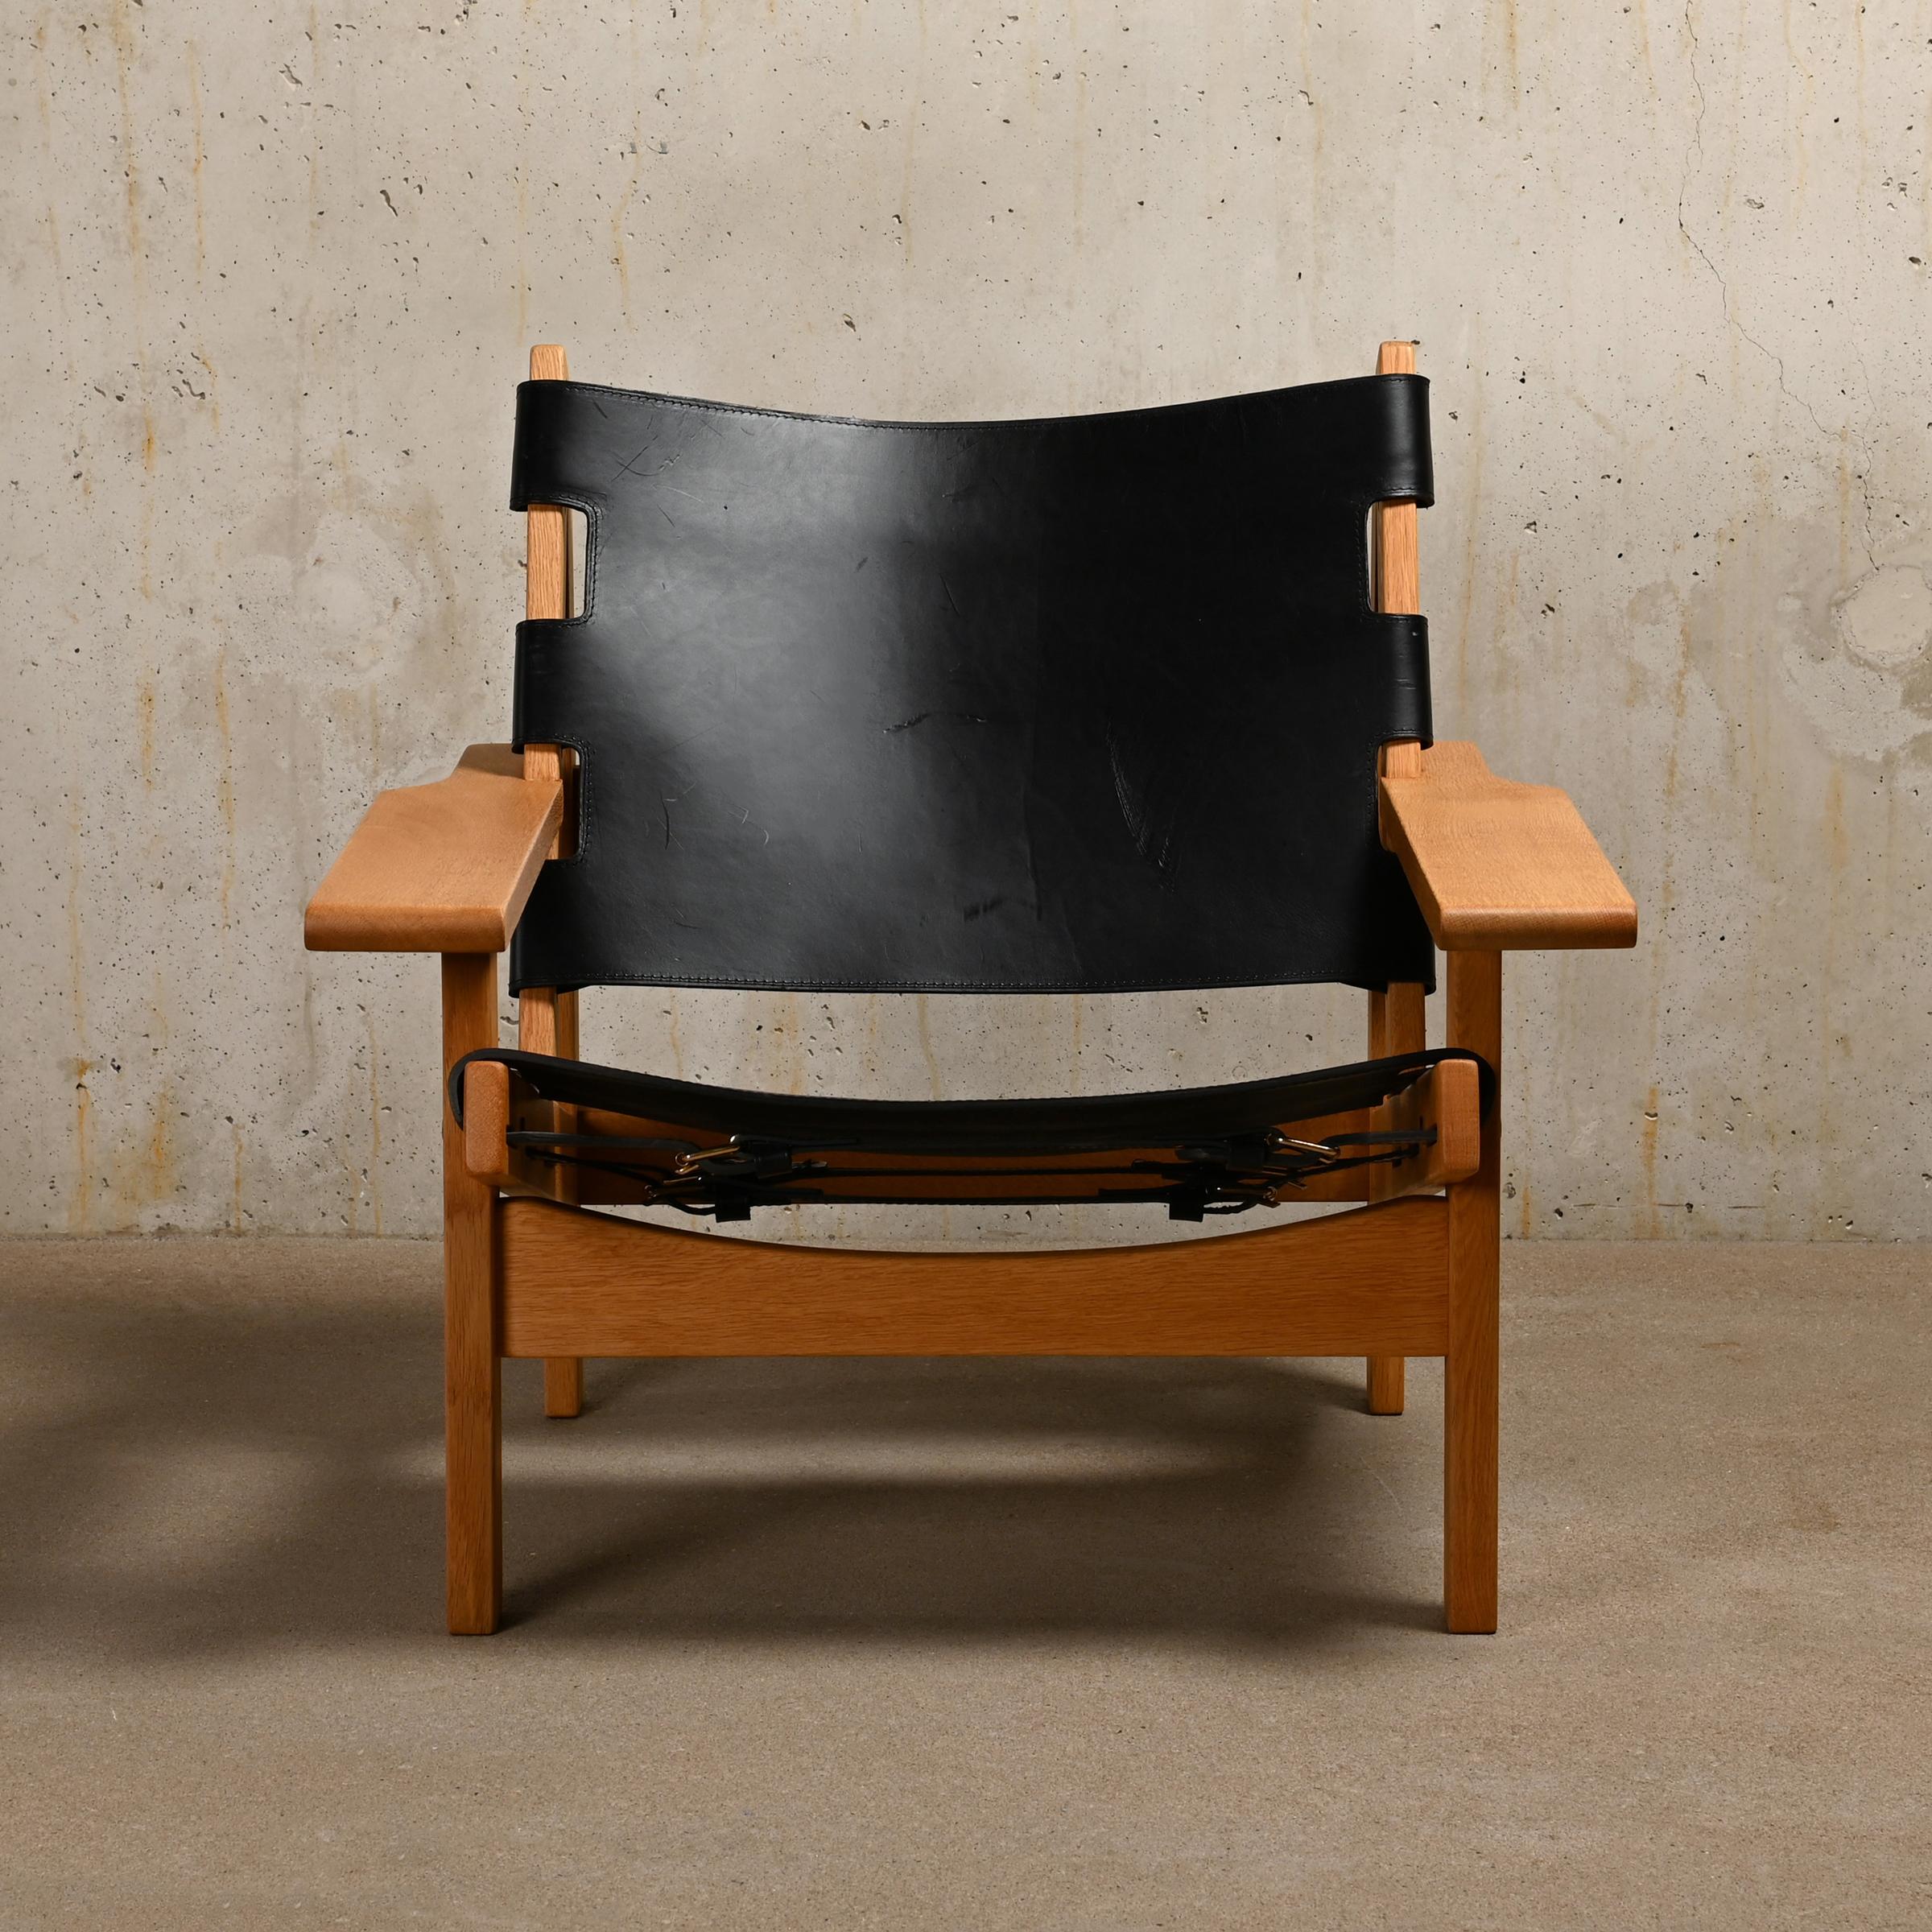 Excellent exemple de chaise de chasse scandinave (modèle 168) réalisée par Kurt Østervig pour K.P. Jørgensens Møbelfabrik, Danemark. Le design est parfois également attribué à Erling Jessen et rappelle l'emblématique chaise espagnole de Børge